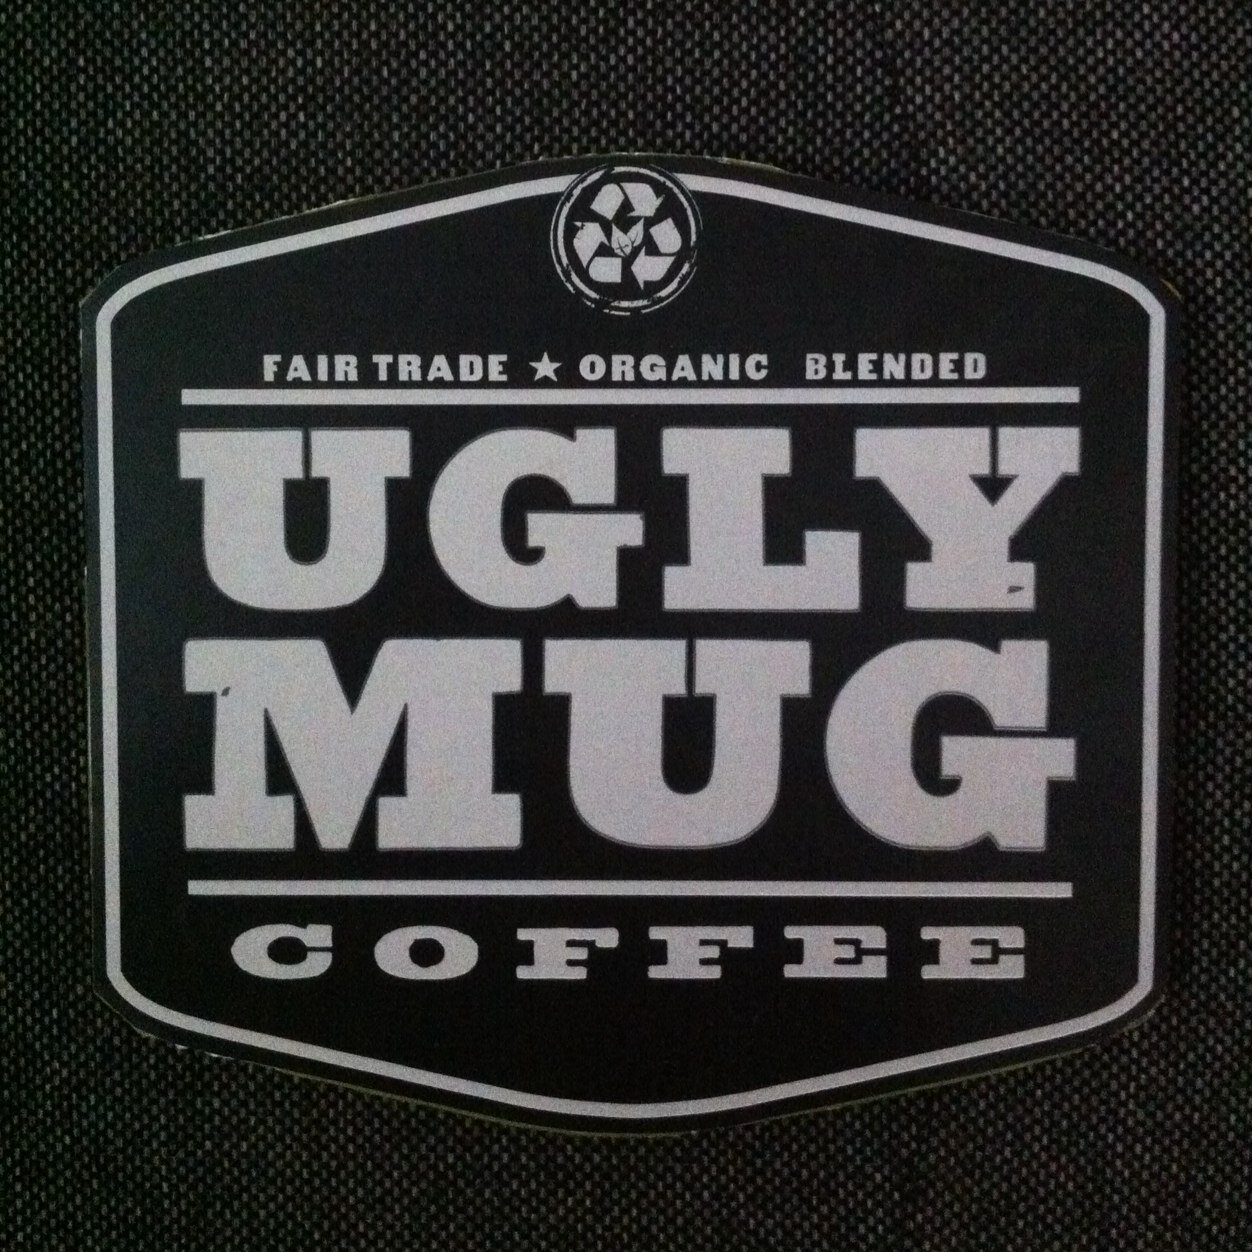 Ugly Mug Coffee